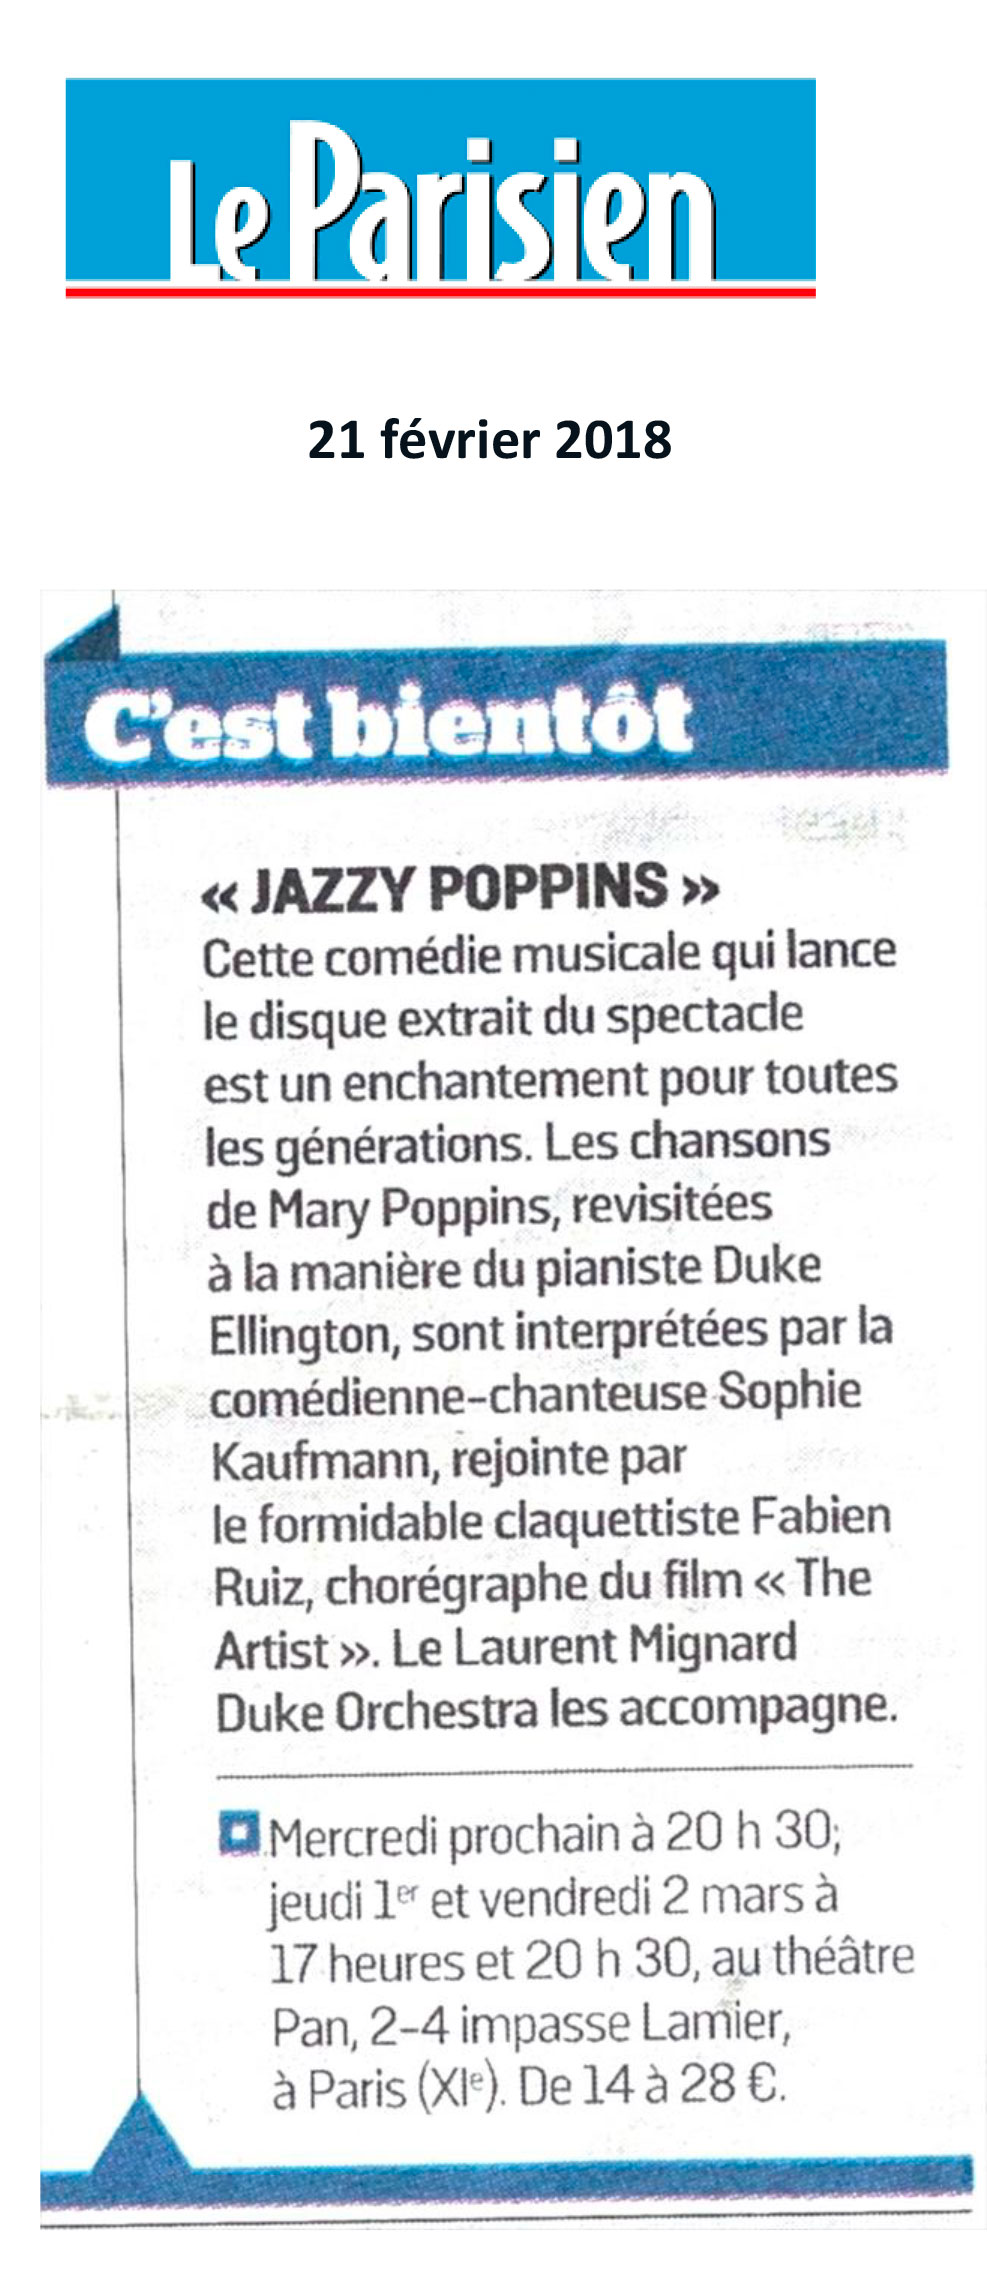 Le Parisien – Février 2018 – Jazzy Poppins